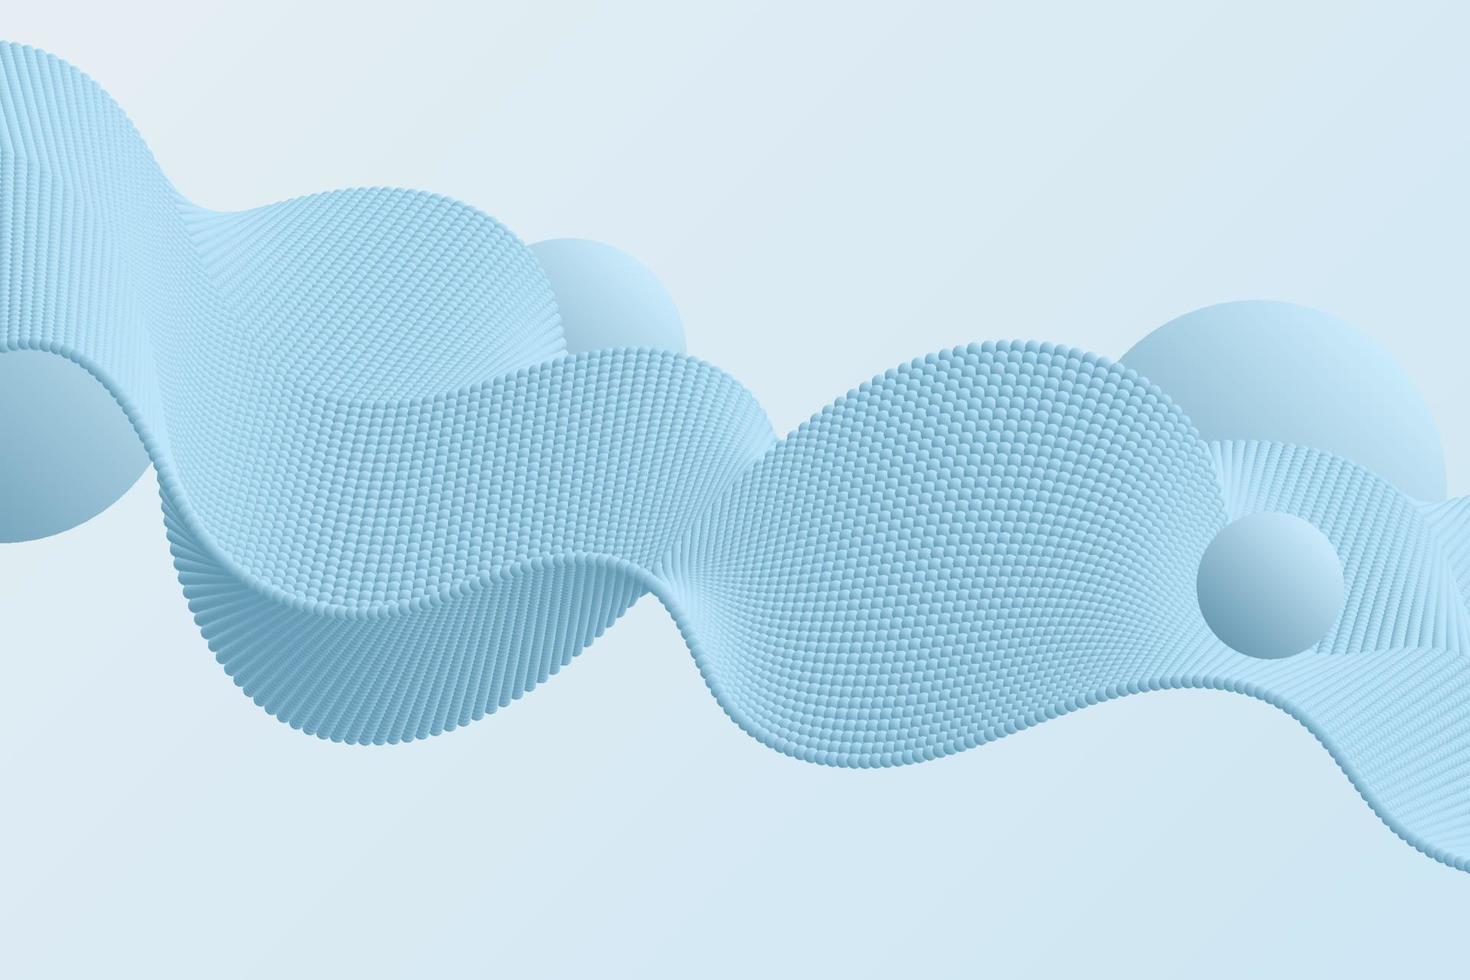 blauer volumendekorativer gepunkteter wellenvektorhintergrund im abstrakten stil für karten, banner, flyer vektor